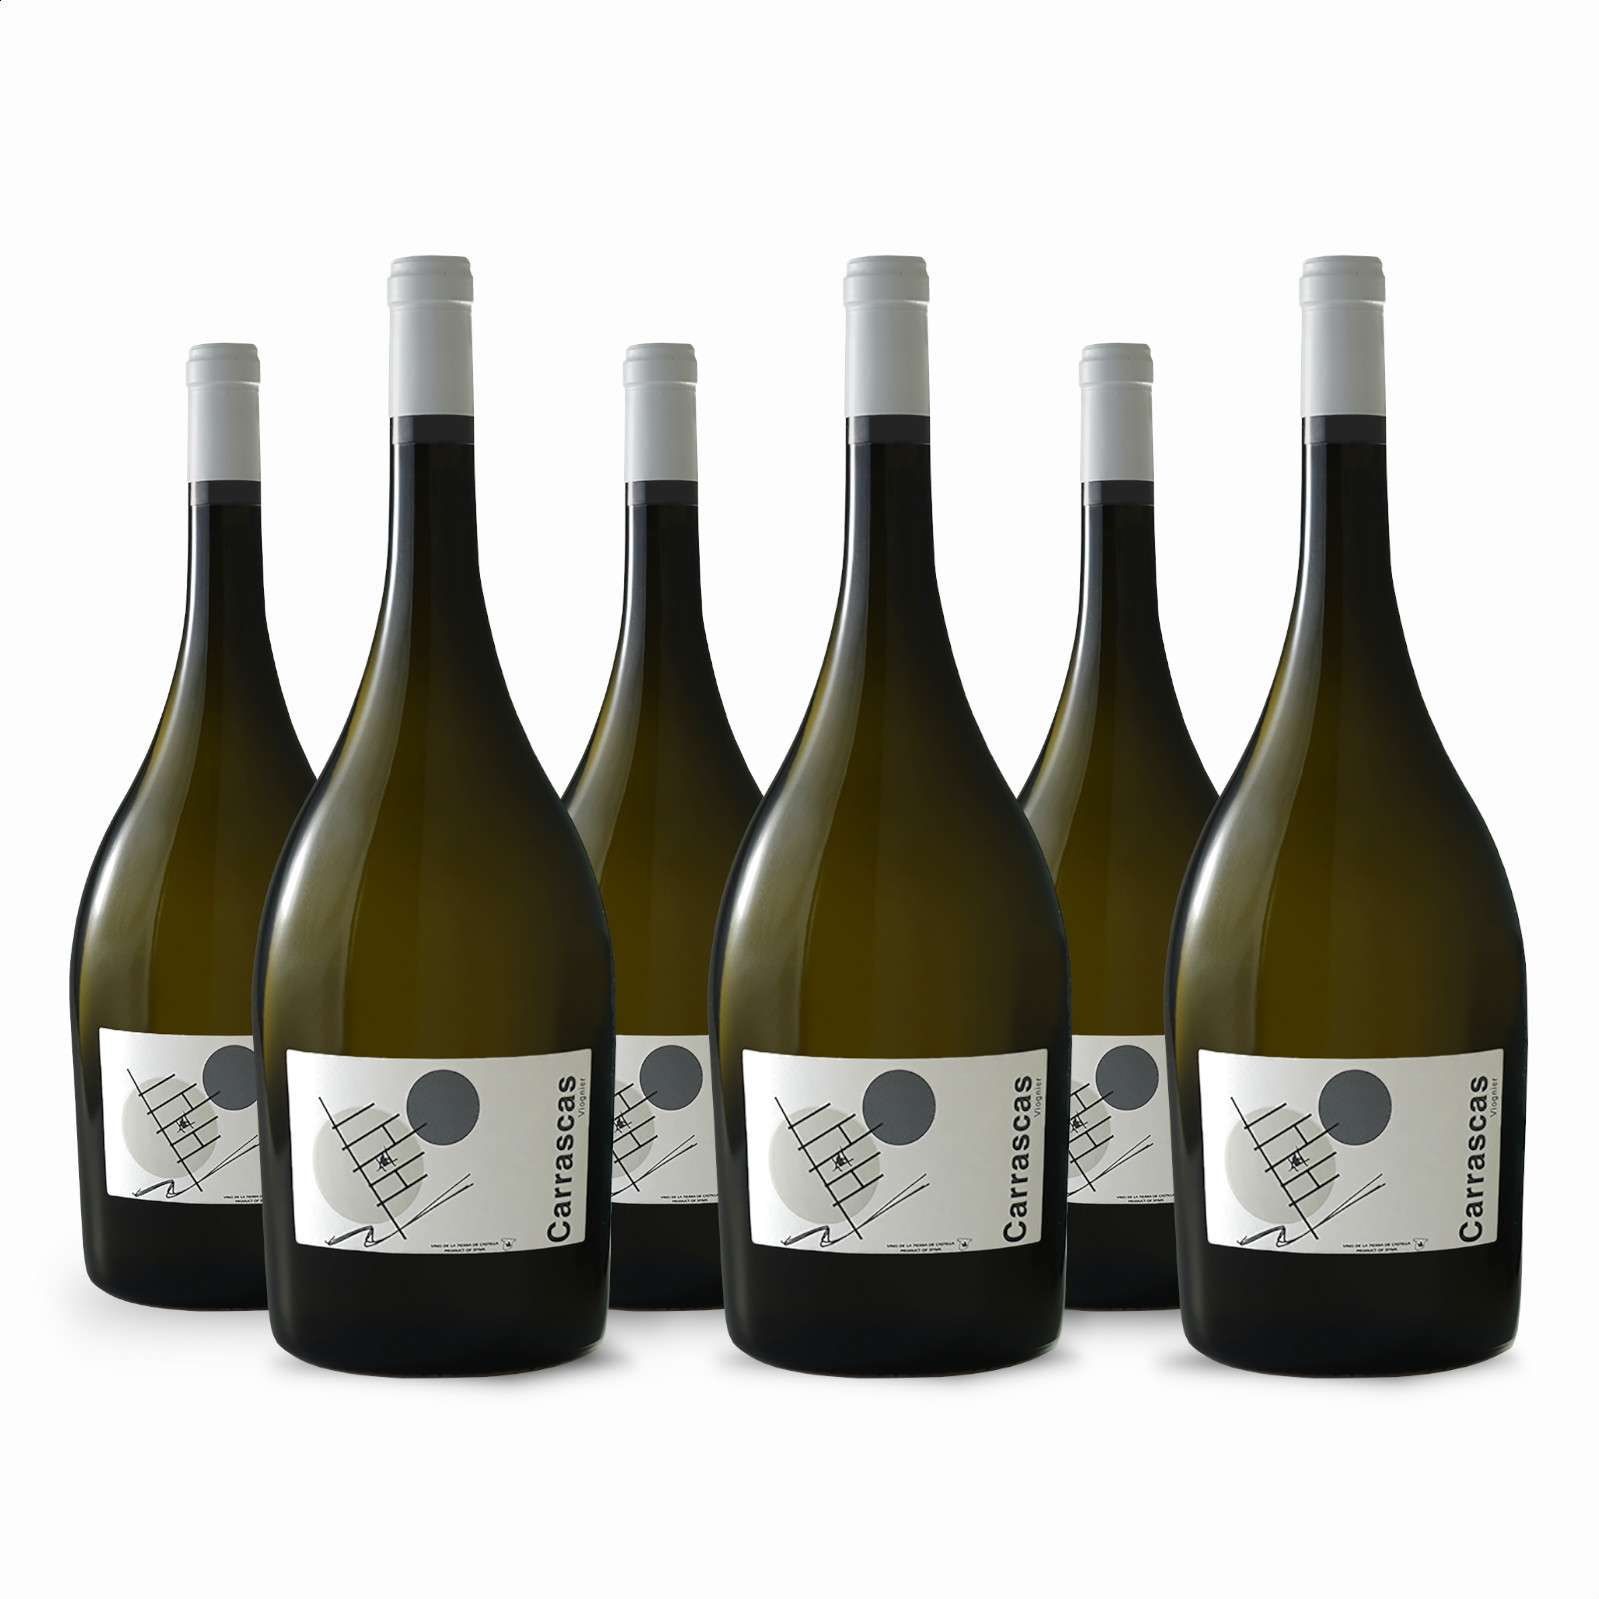 Bodega Carrascas - Carrascas Blanco IGP Vino de la Tierra de Castilla 150cl, 6uds